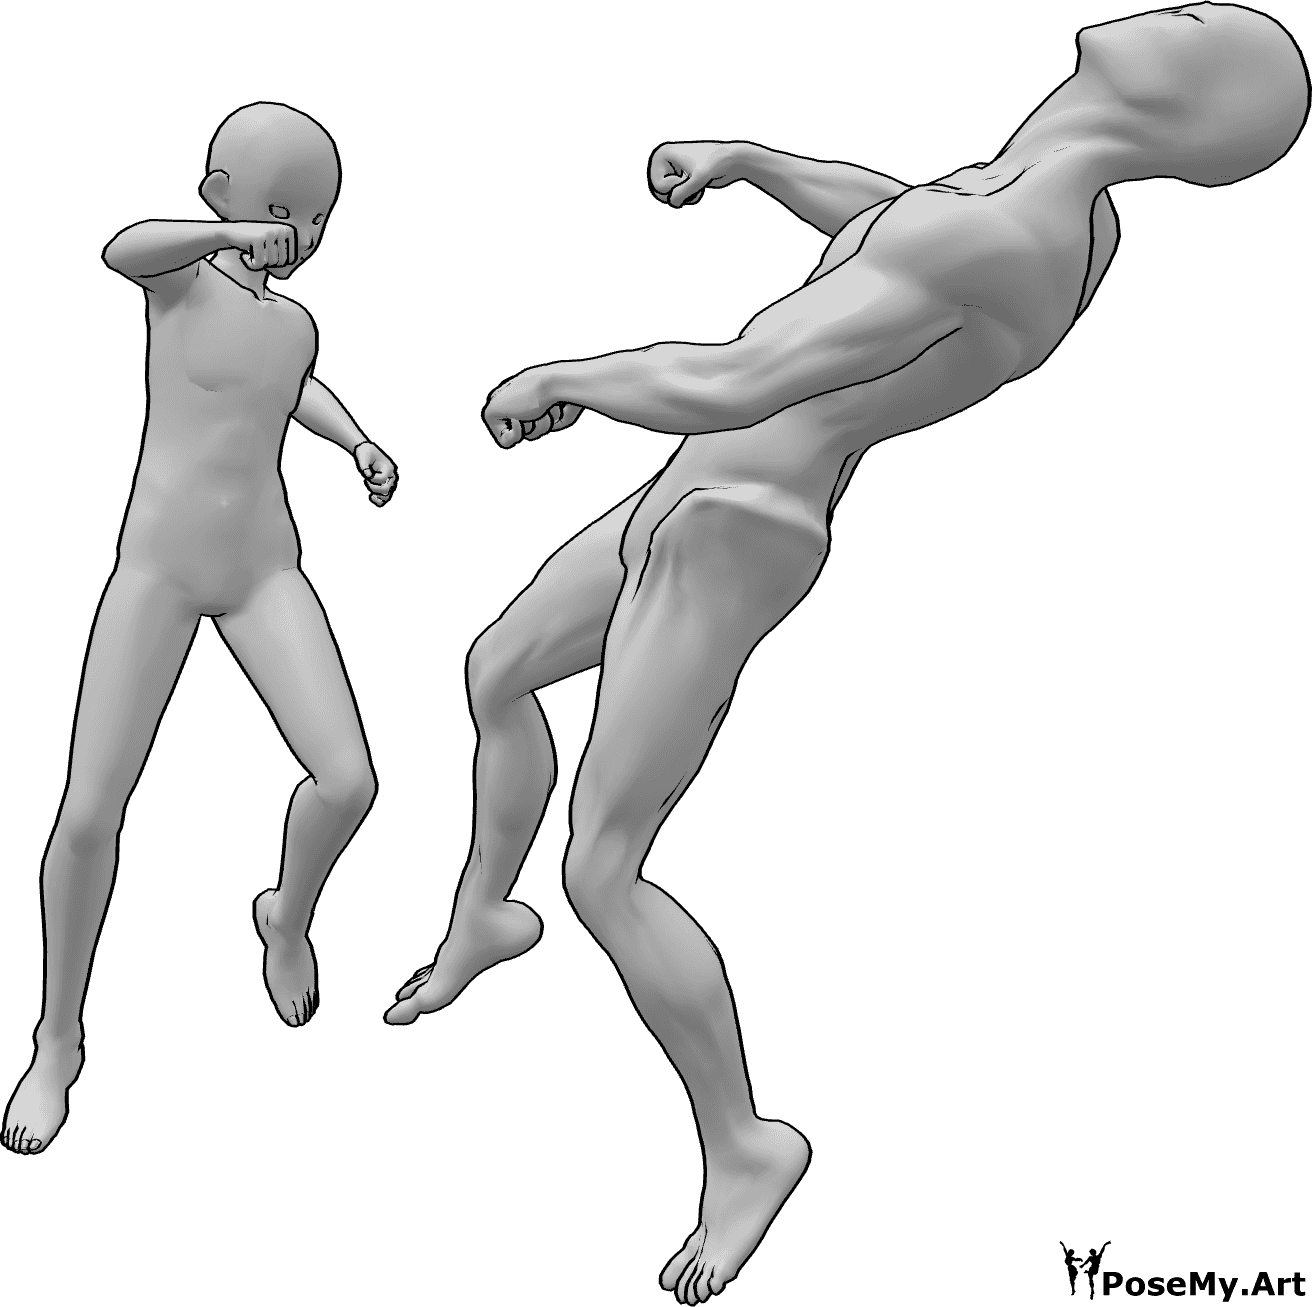 Riferimento alle pose- Posa da knock out in stile anime - L'eroe maschile degli anime sta stendendo il nemico che sta volando all'indietro inconsapevolmente